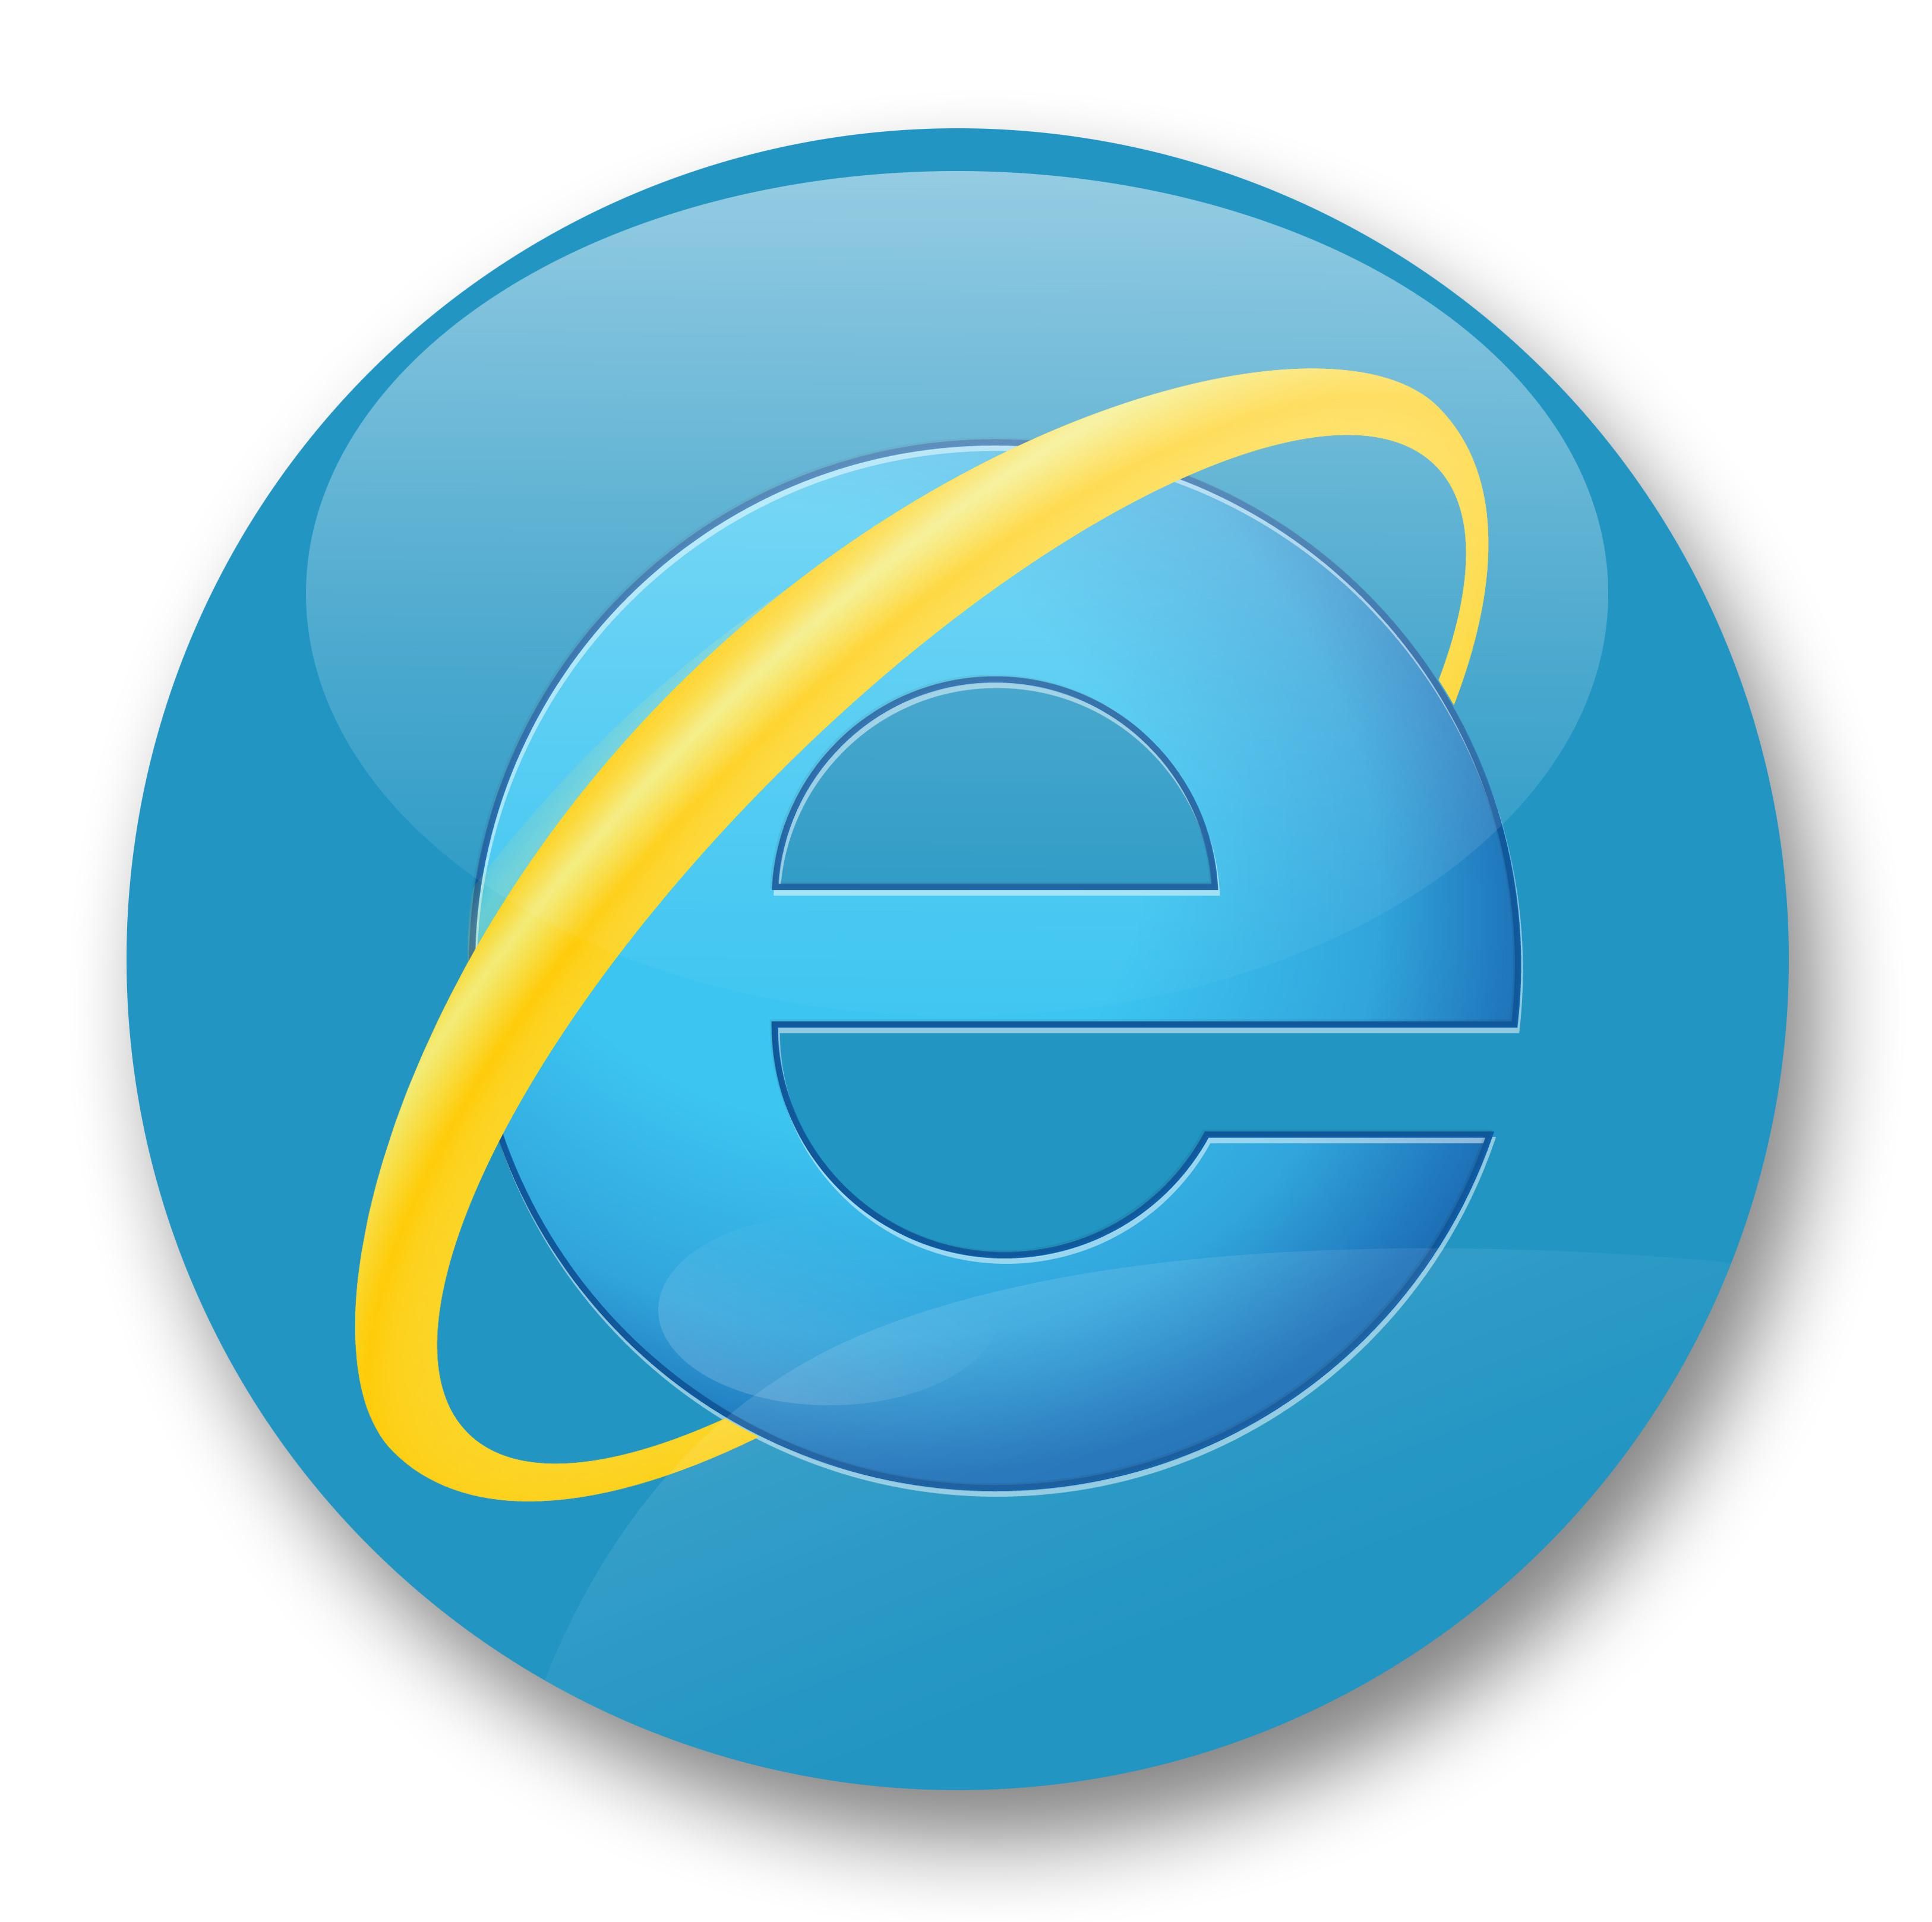 Viszlát, Internet Explorer! Kitűzték a legendás böngésző nyugdíjazásának napját